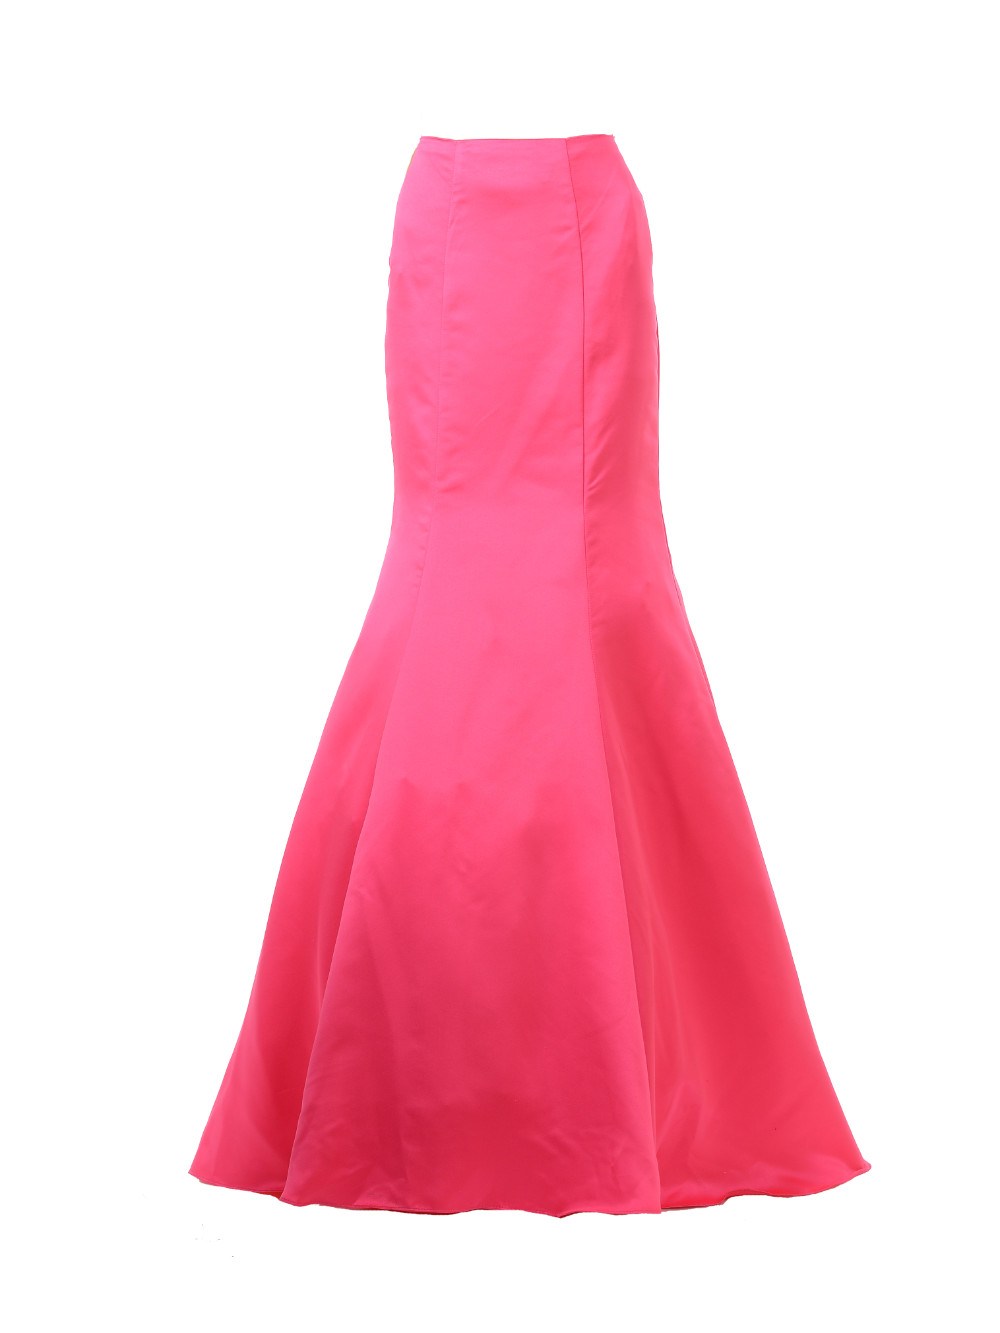 Poly USA SK18 - Hot Pink Mermaid Skirt Satin Ruffled Back 